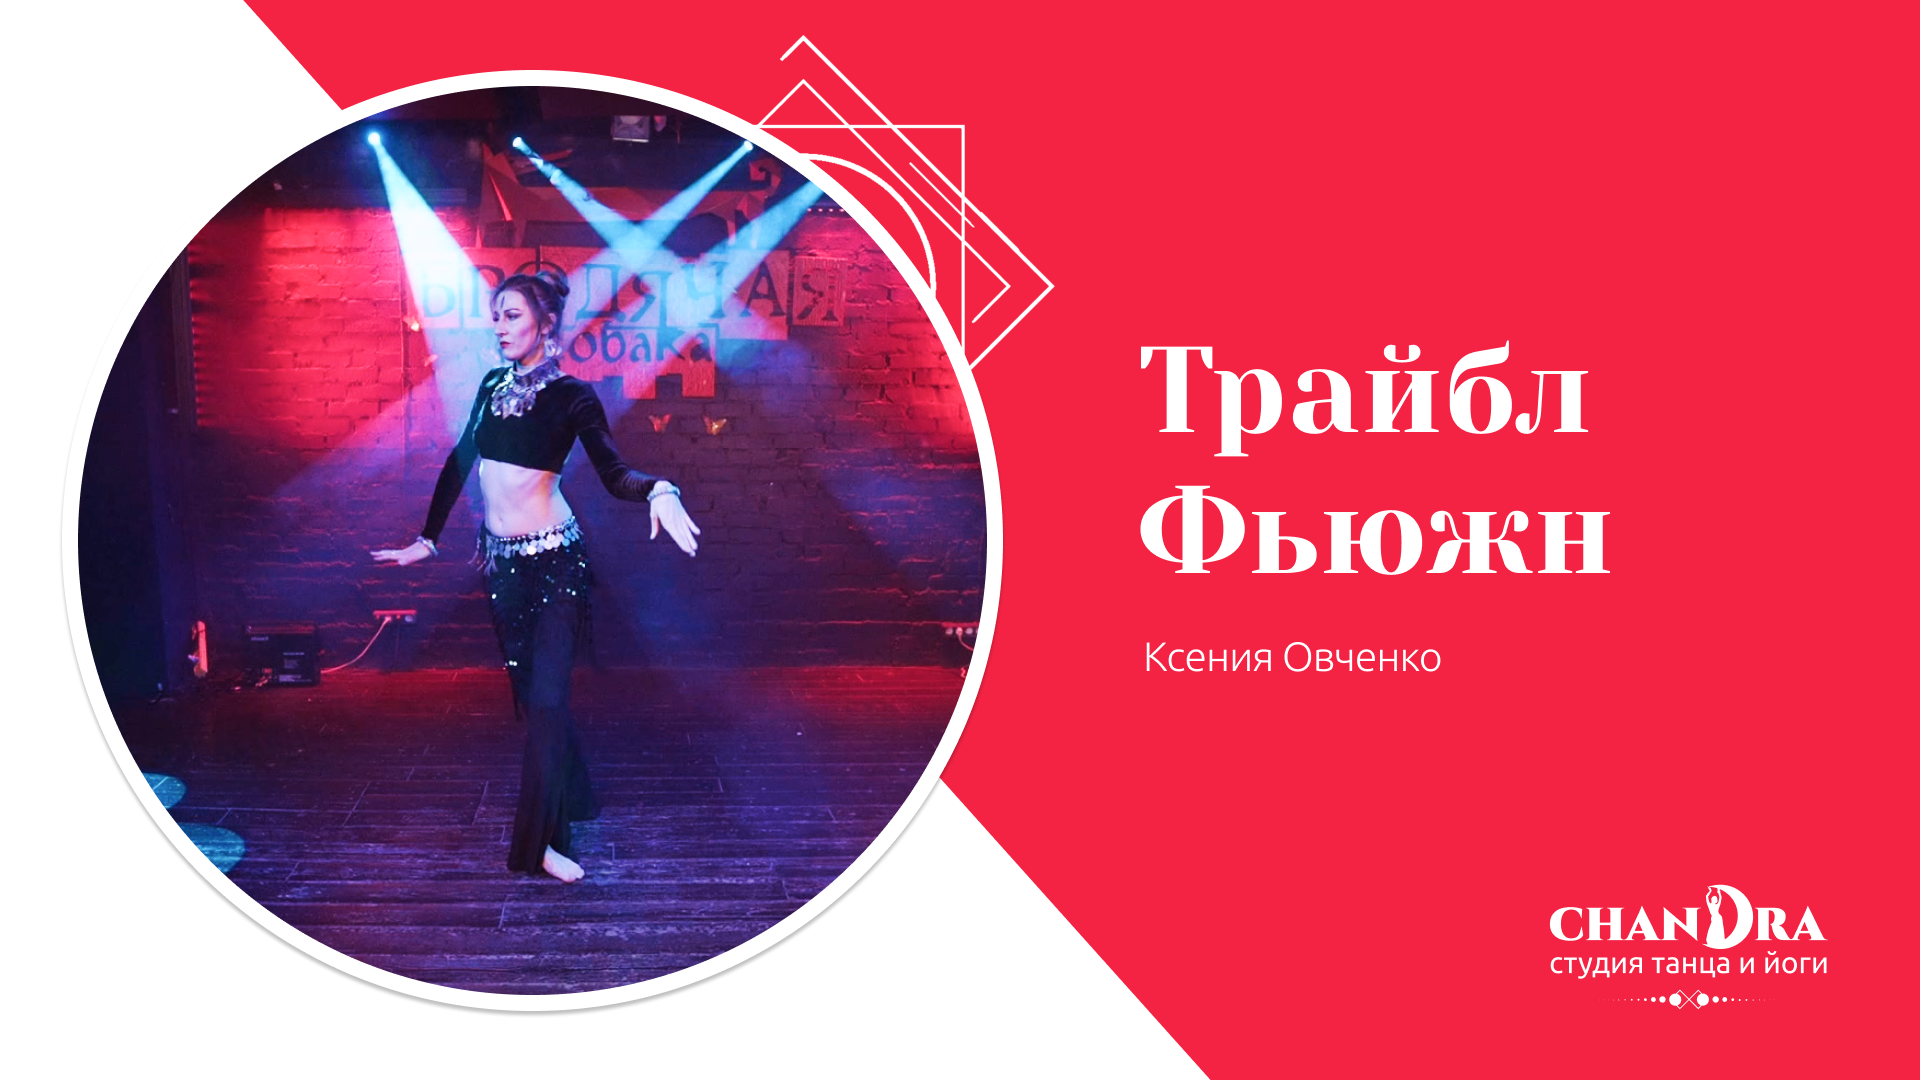 Студия танца и йоги в Новосибирске Chandra. Отчетный концерт 2024: Трайбл фьюжн, Ксения Овченко